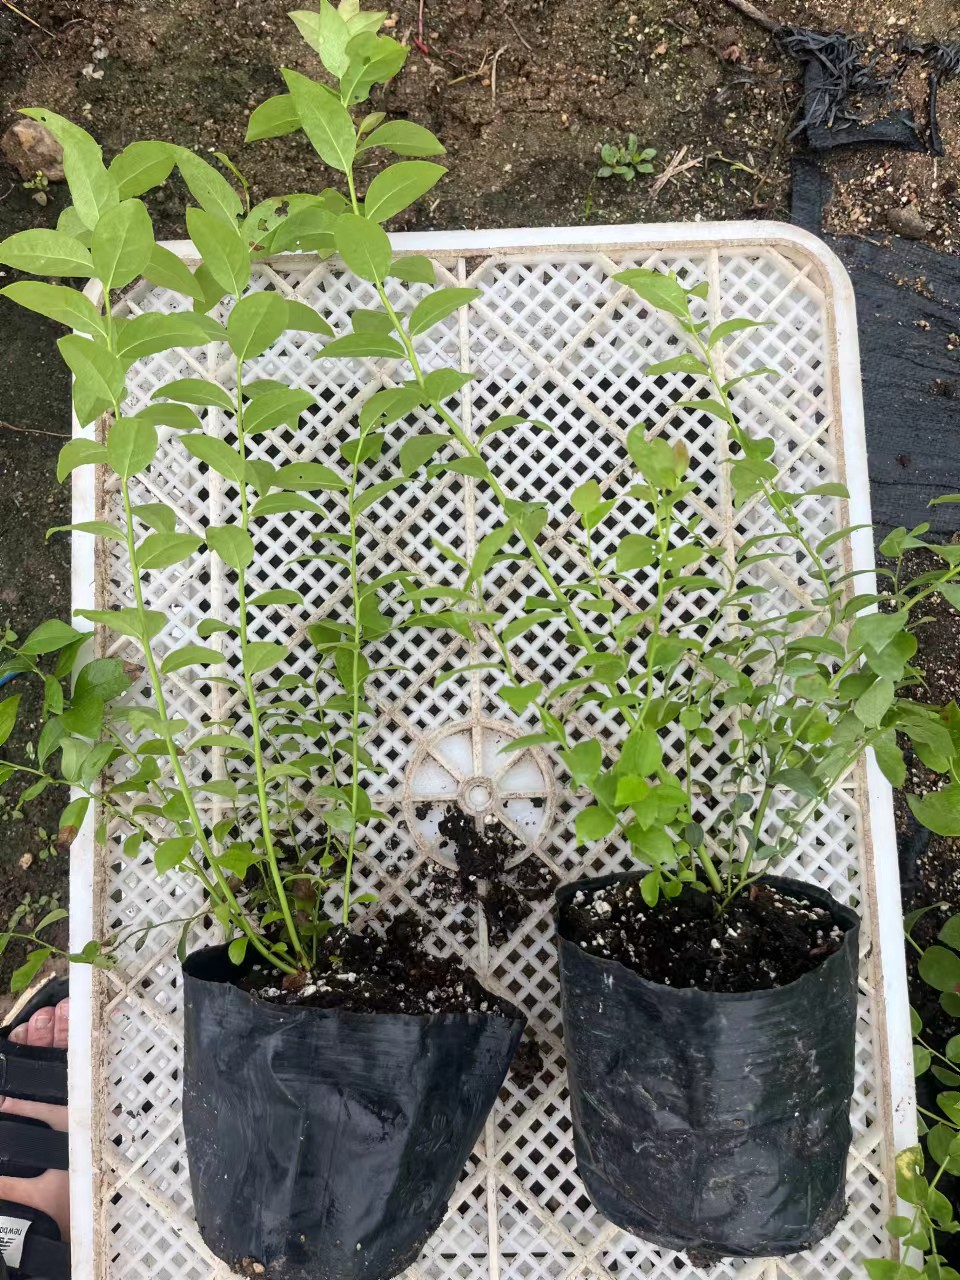 绿宝石蓝莓苗青海种植方法